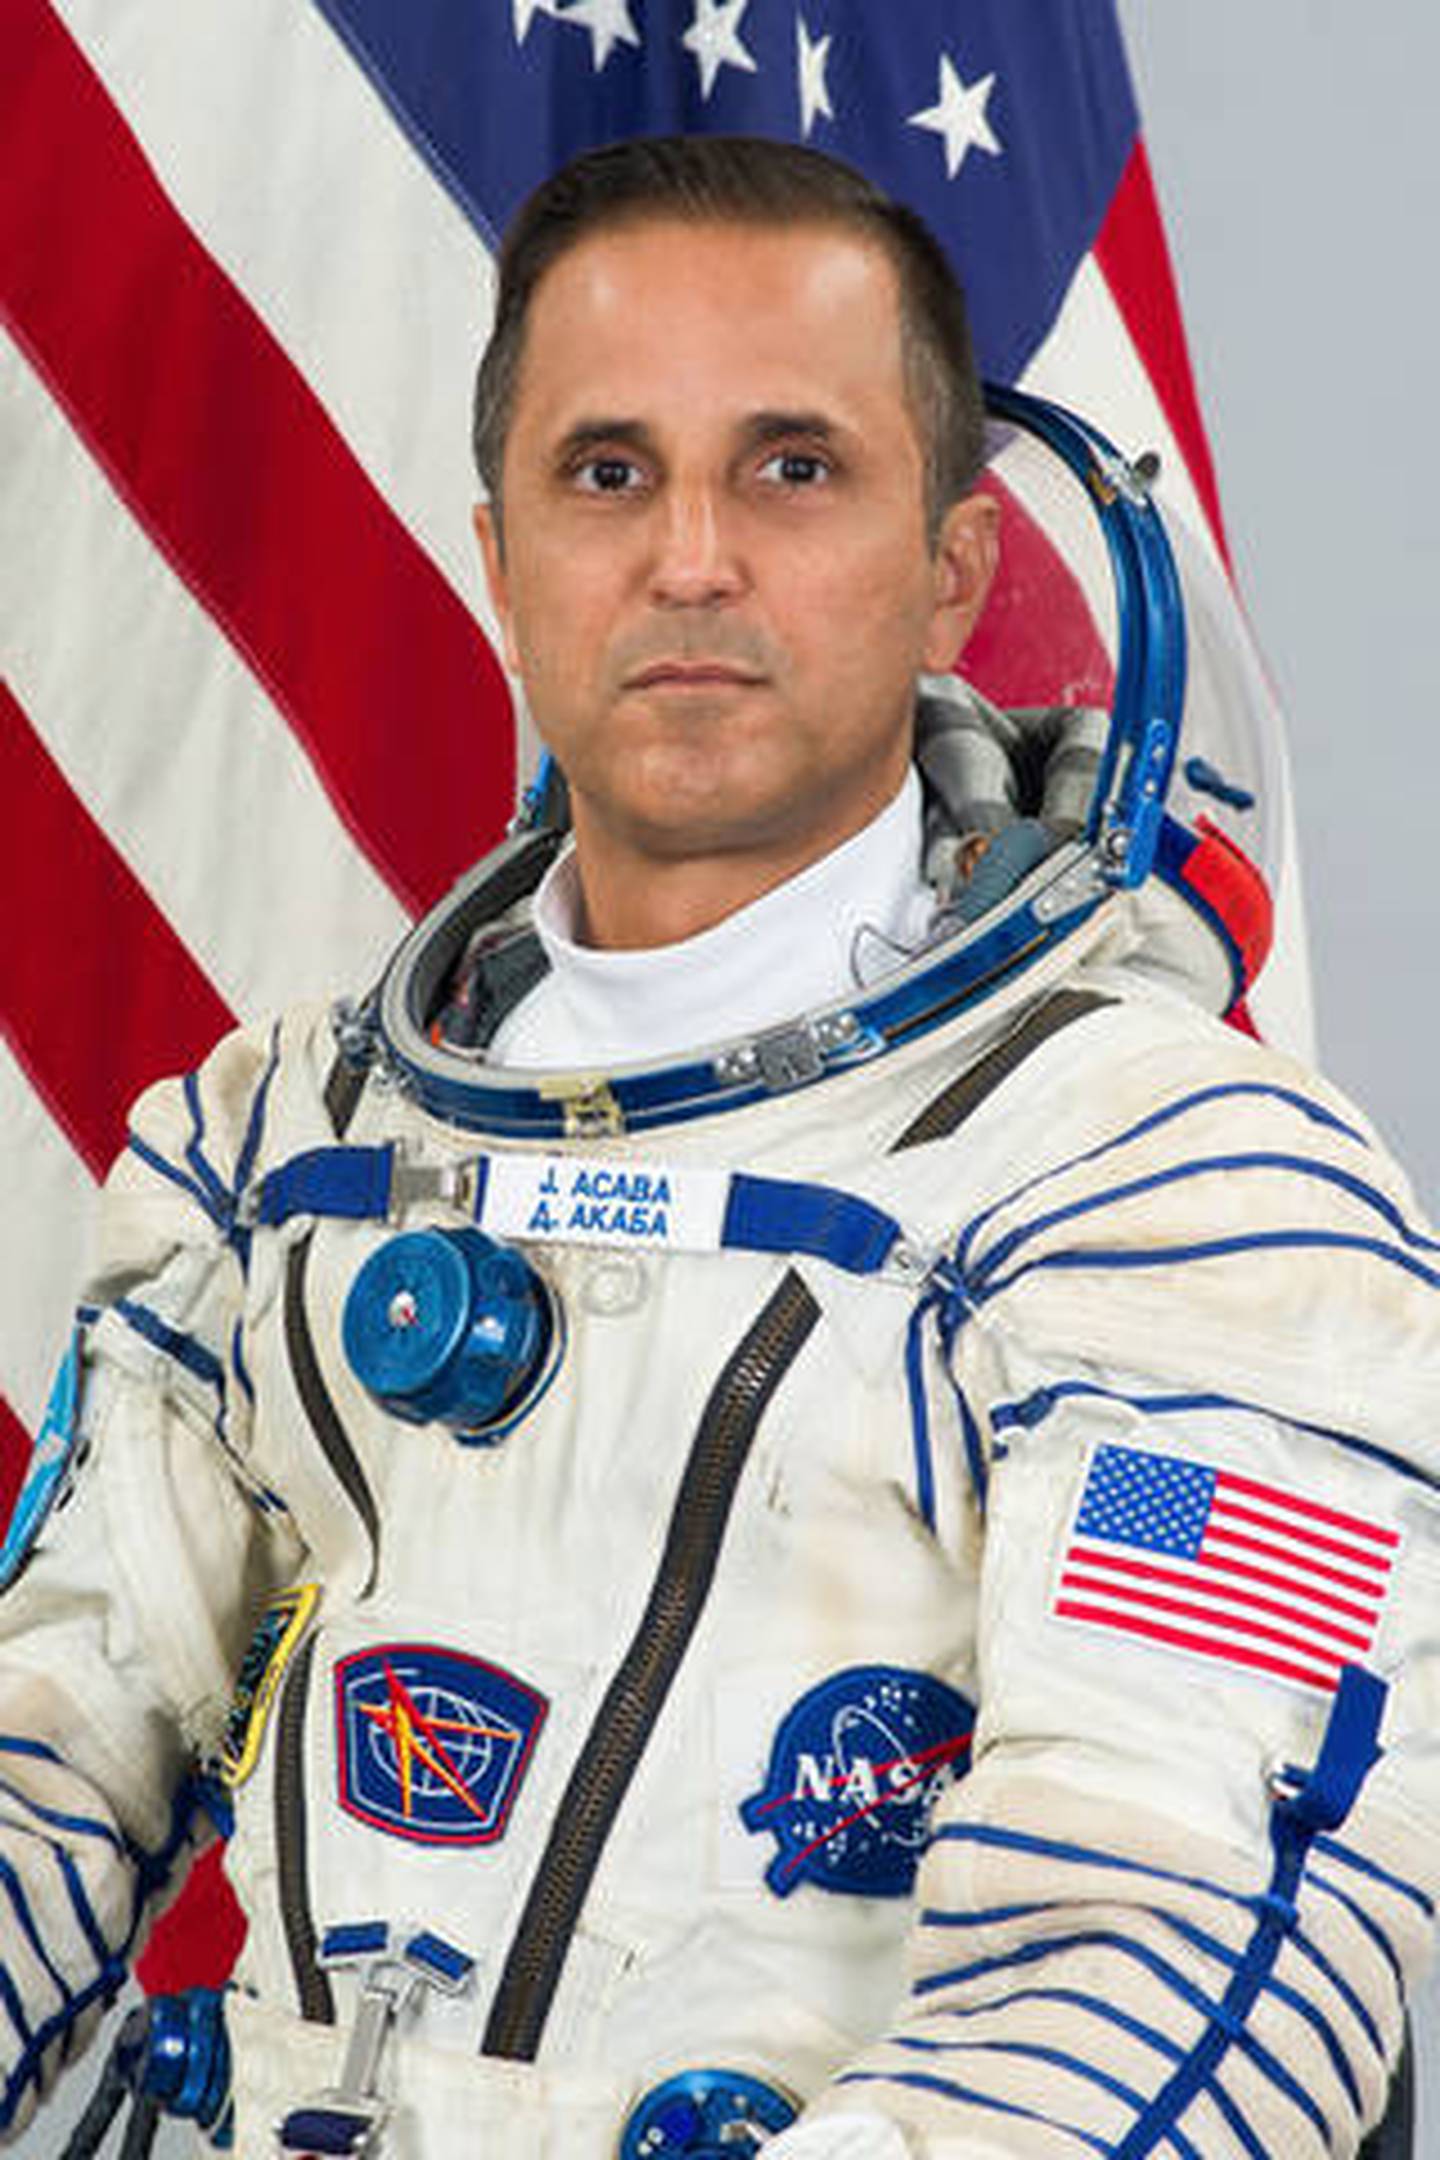 El experimentado astronauta, hijo de puertorriqueños, está entre los 18 astronautas miembros del Equipo Artemis.